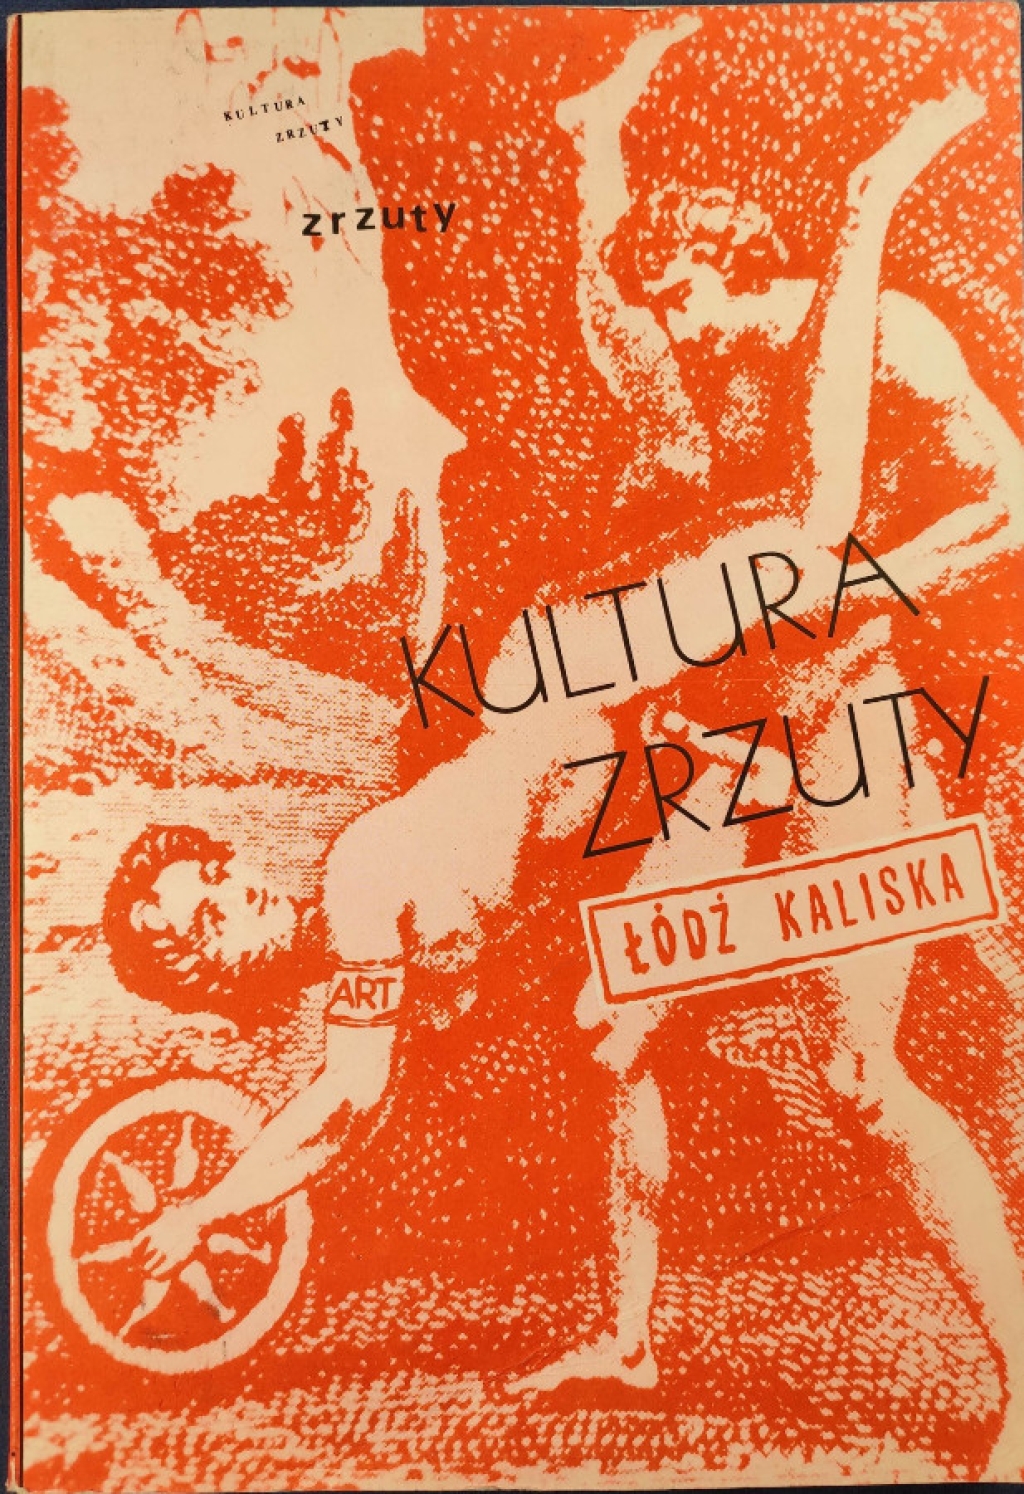 Kultura Zrzuty 1981-1987. Łódź Kaliska